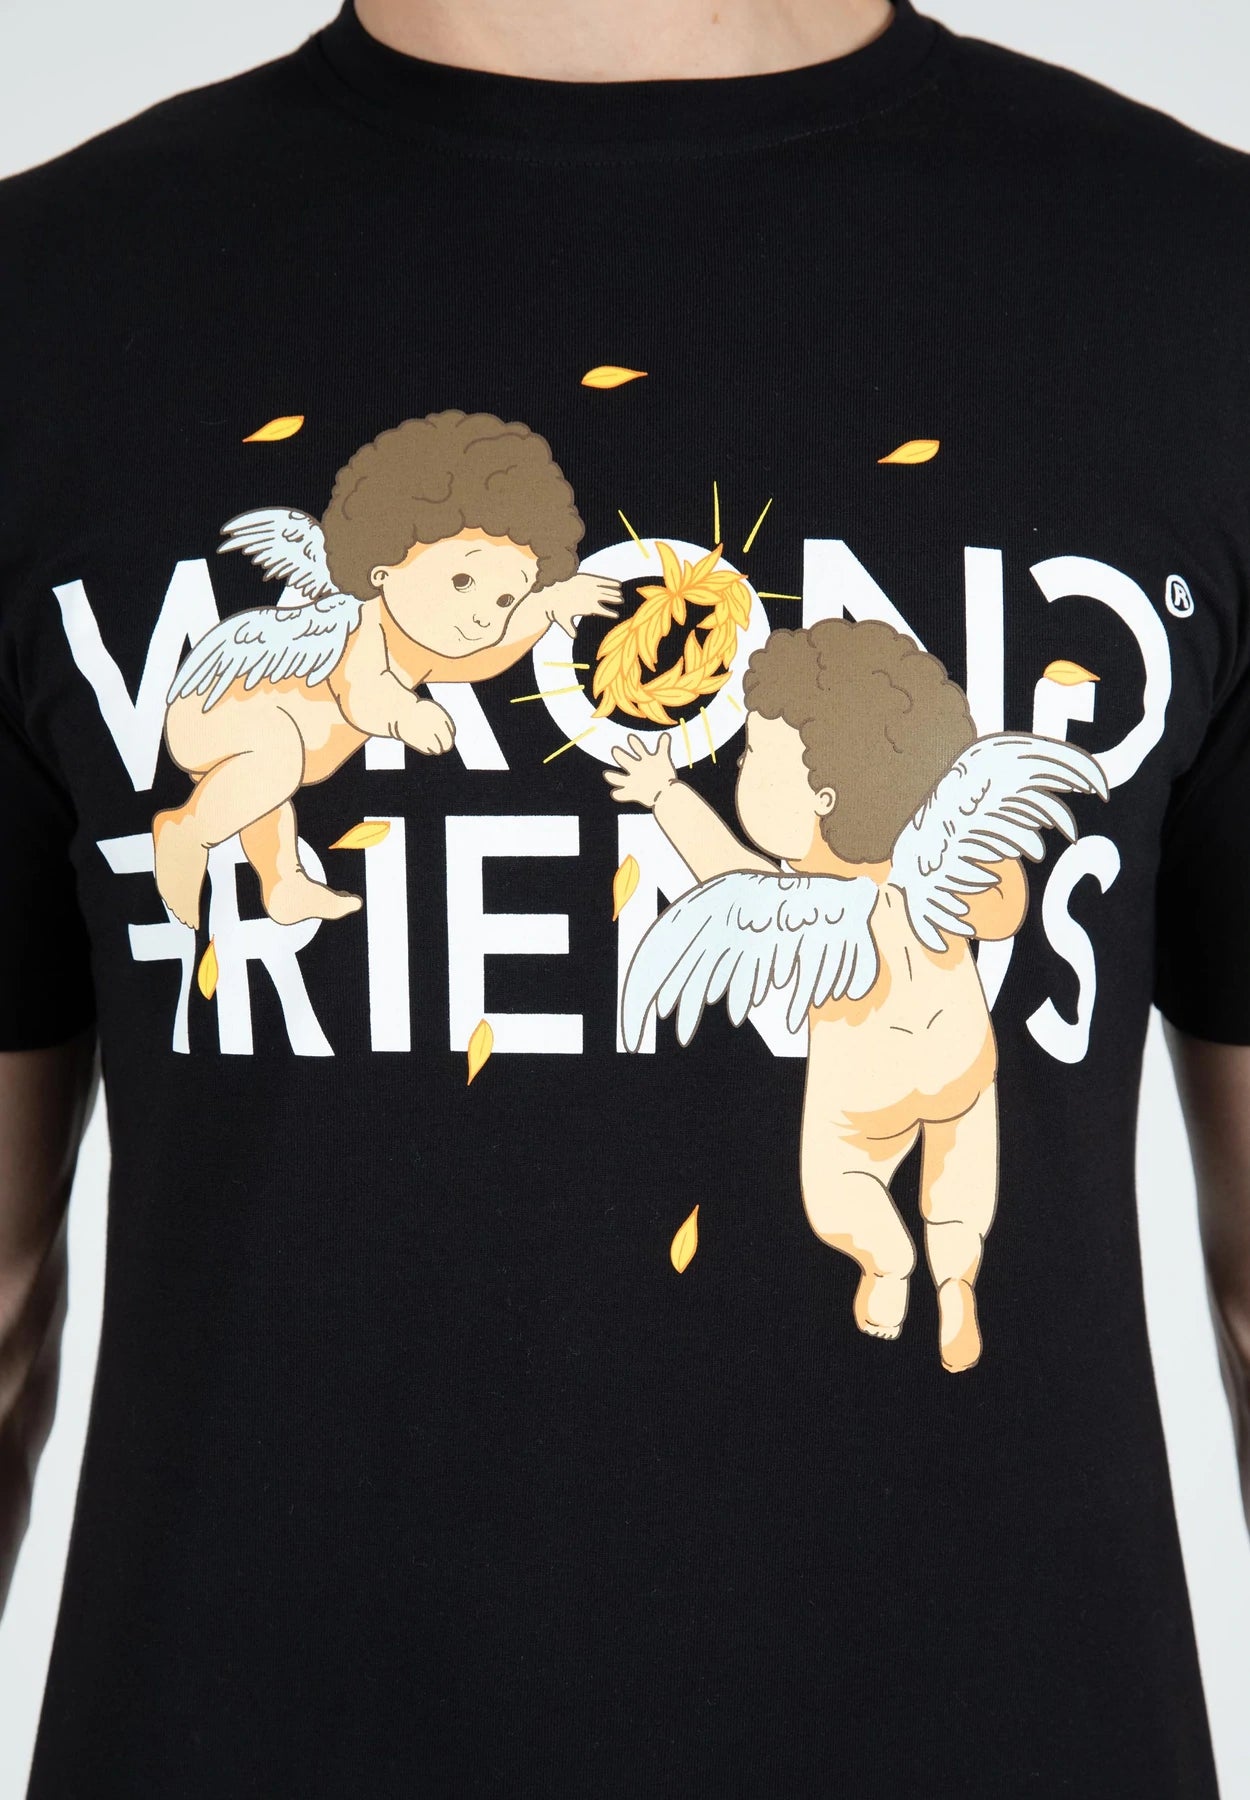 Wrong Friends Angels T-Shirt - Schwarz